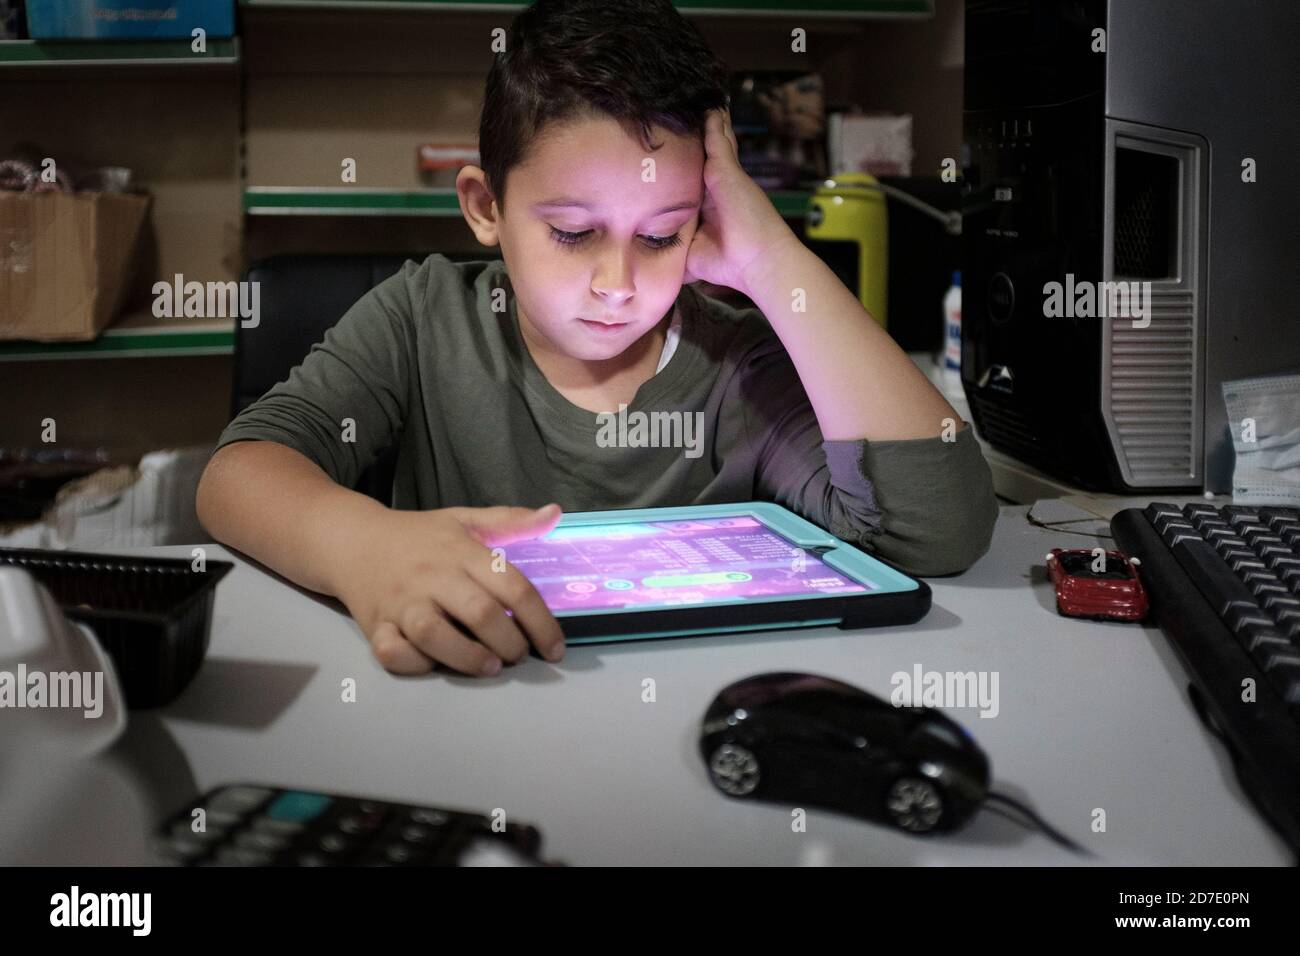 Middle Eastern boy , età 6 anni che gioca su un tablet per computer Foto Stock